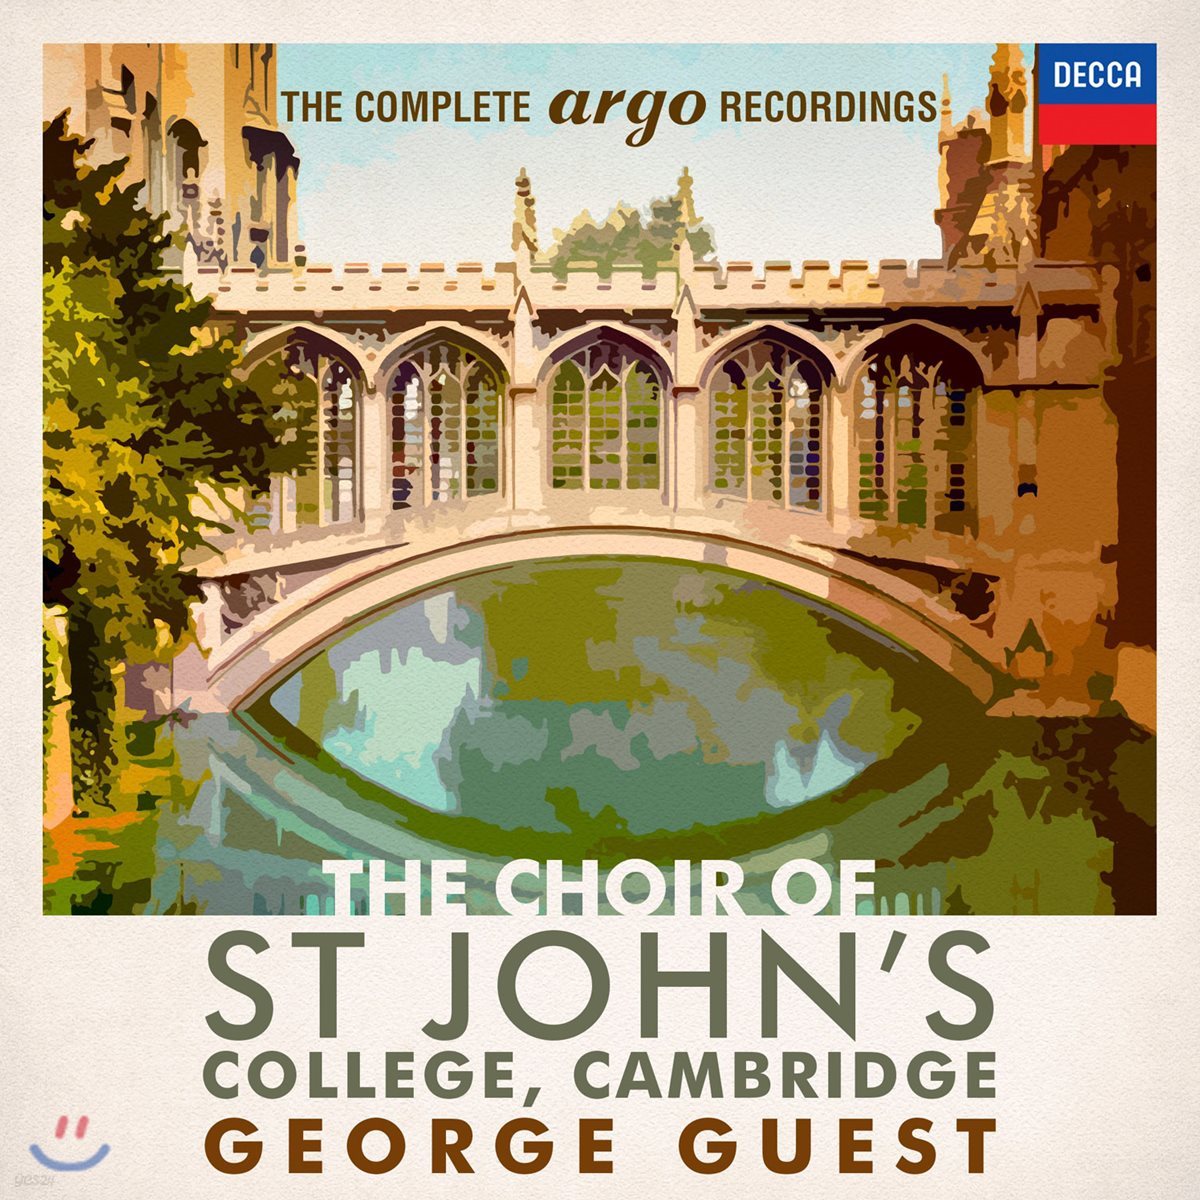 캠브리지 세인트 존스 칼리지 합창단 - 아르고 녹음 전집 (The Choir of St. John&#39;s College Cambridge - The Complete Argo Recordings)